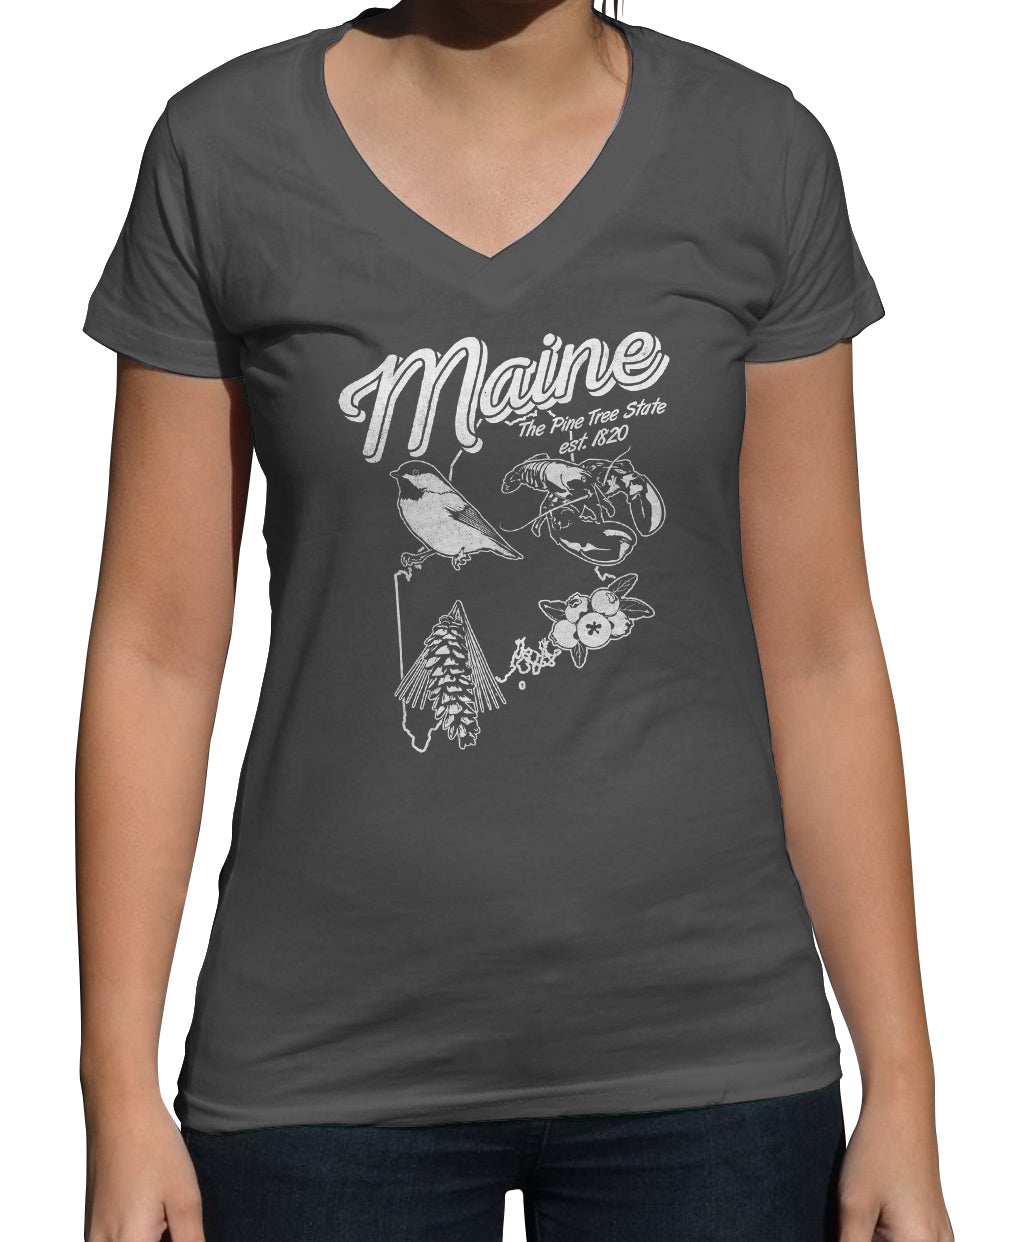 Women's Vintage Maine Vneck T-Shirt